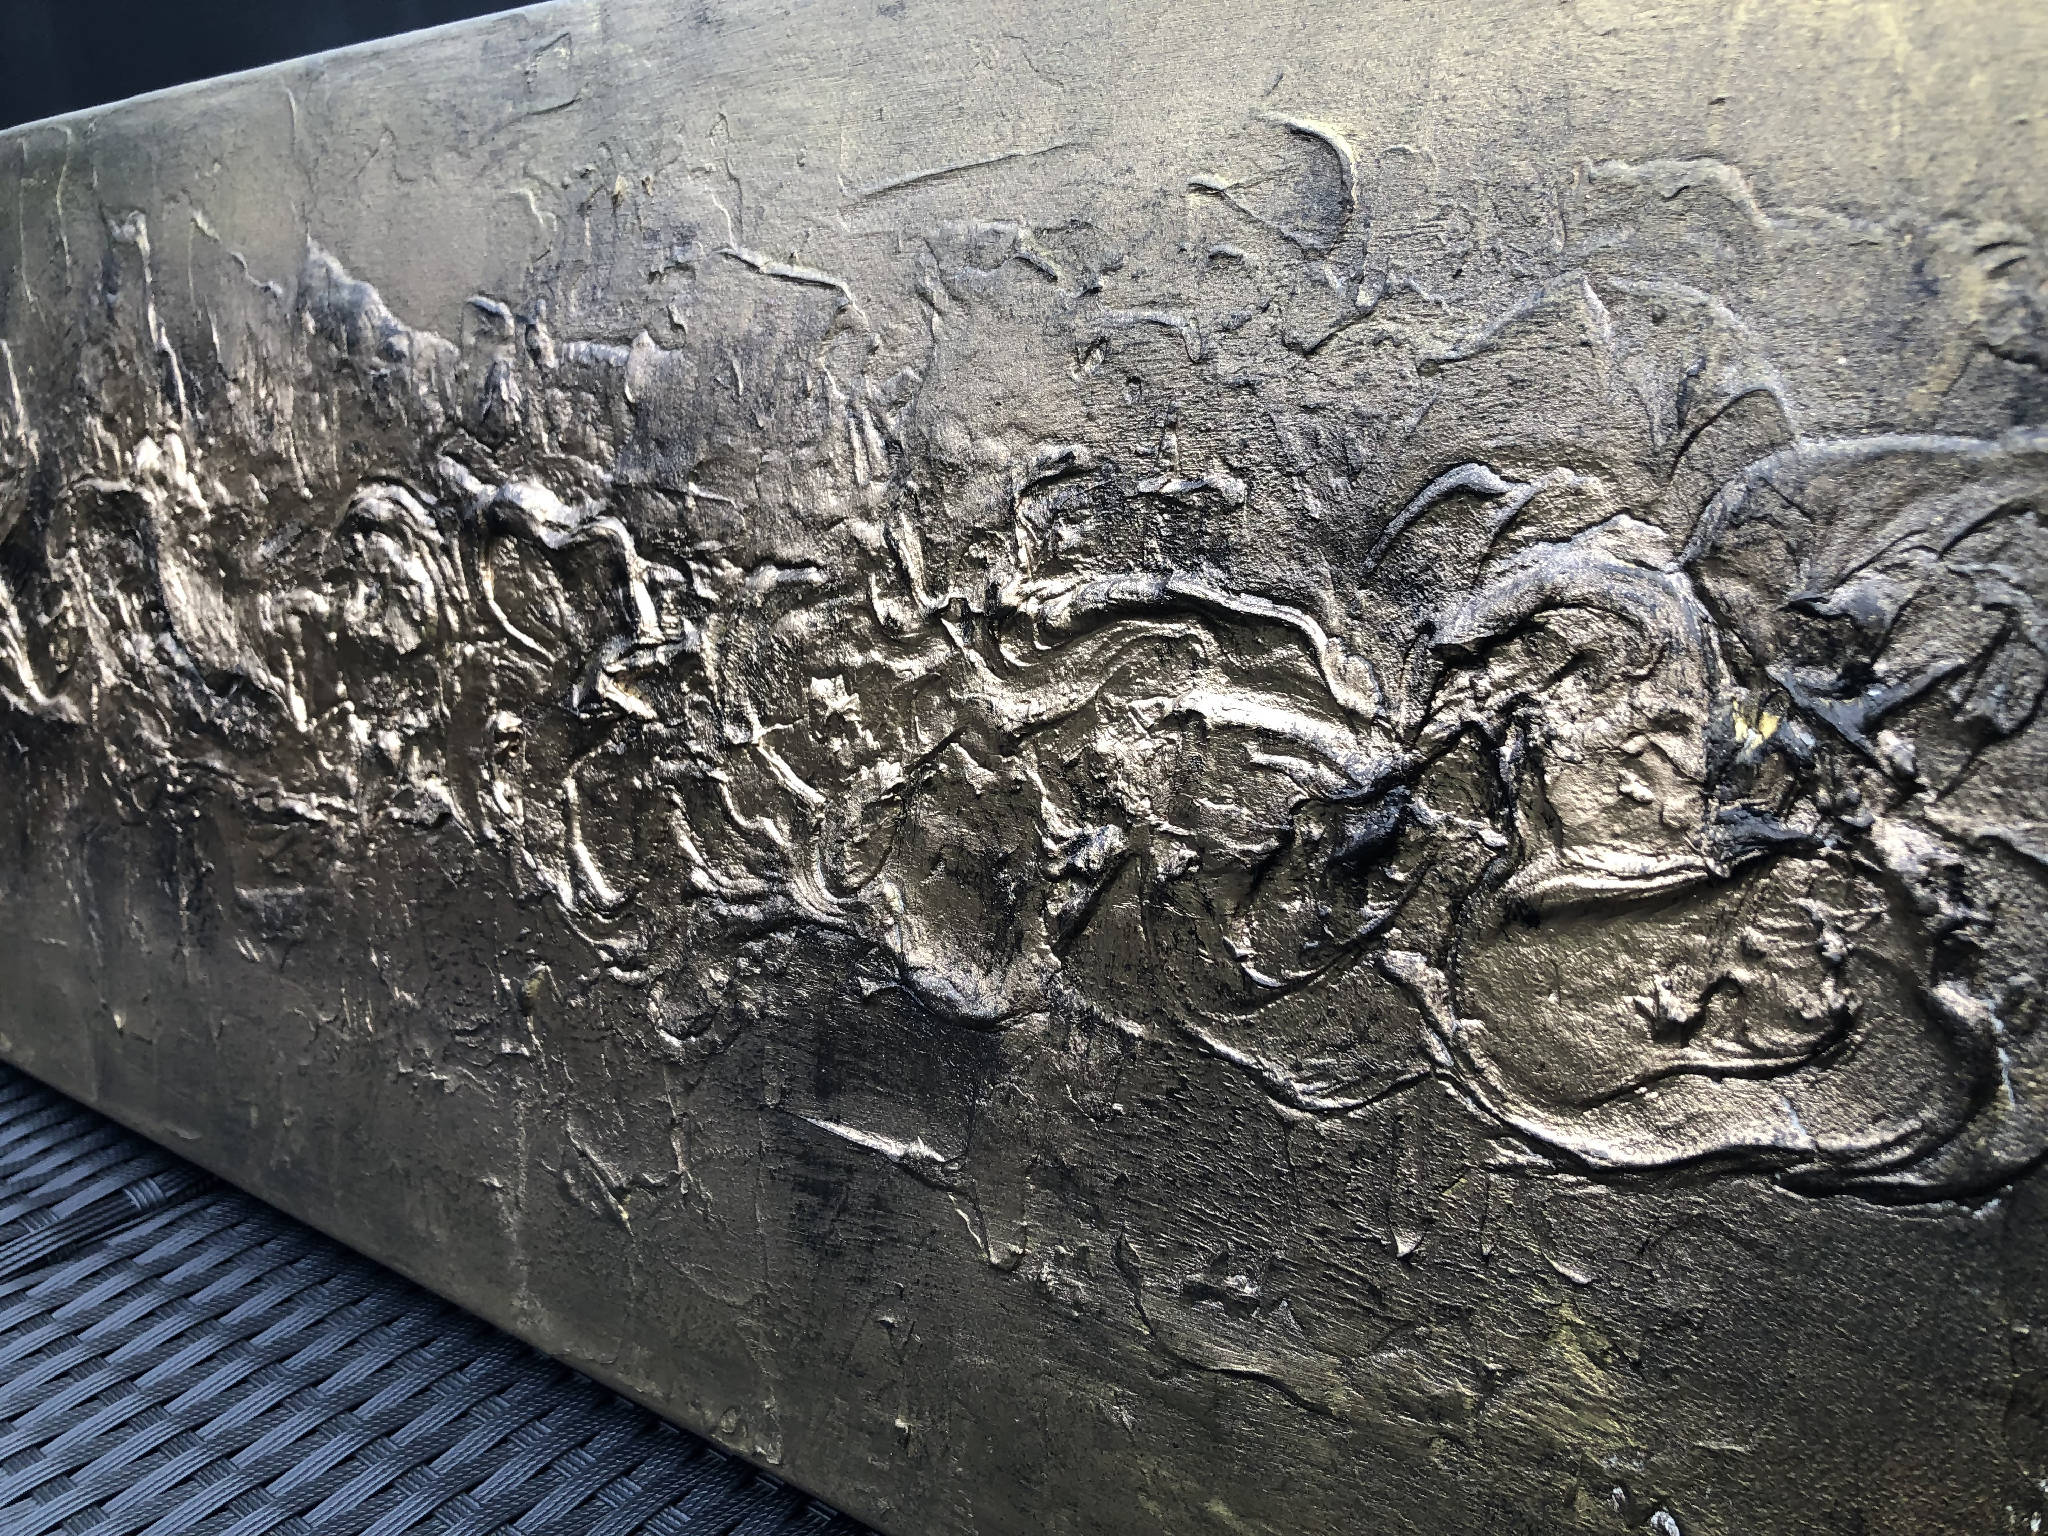 BRONZIUM - Striking textured art in bronze and gold (102x30x4cm)